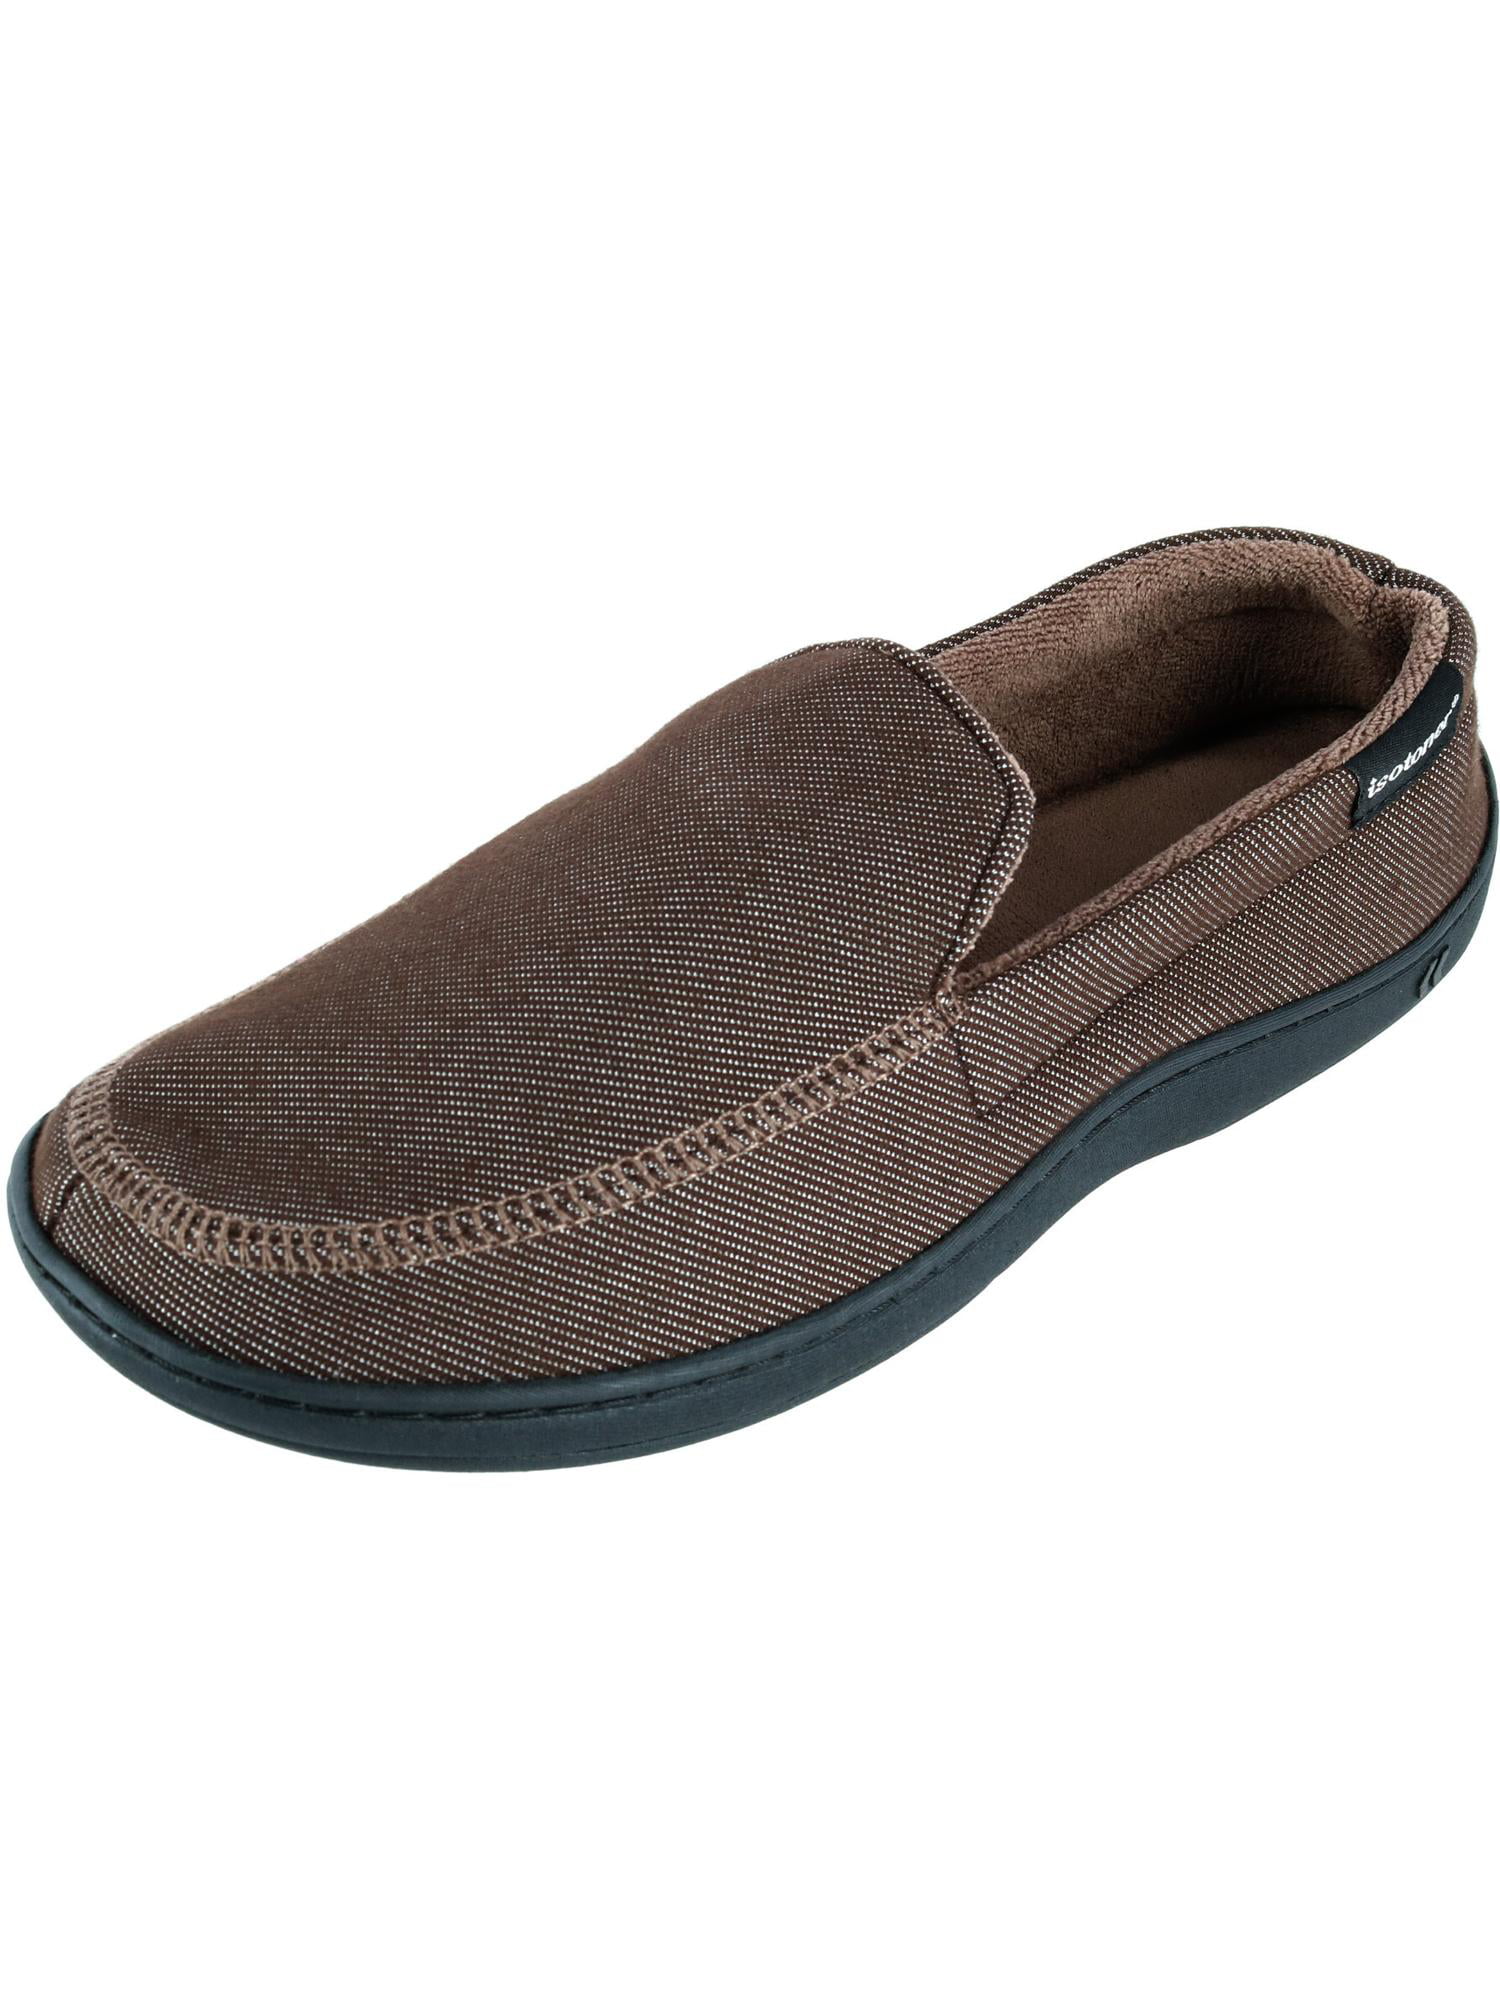 Brown Isotoner Mens Shoes - Walmart.com